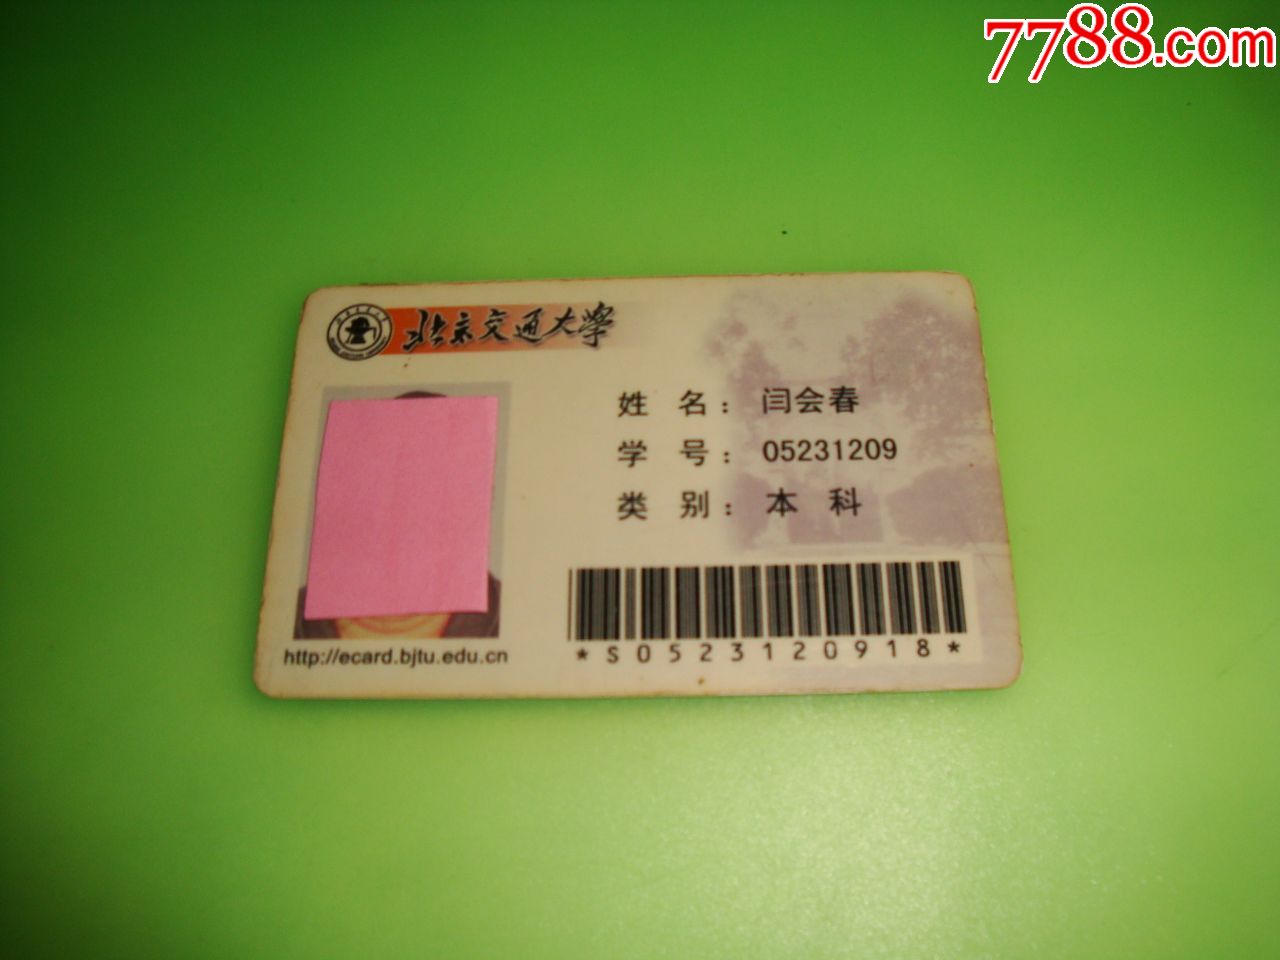 北京交通大学【学生卡】-价格:5元-se70001132-校园卡-零售-7788收藏